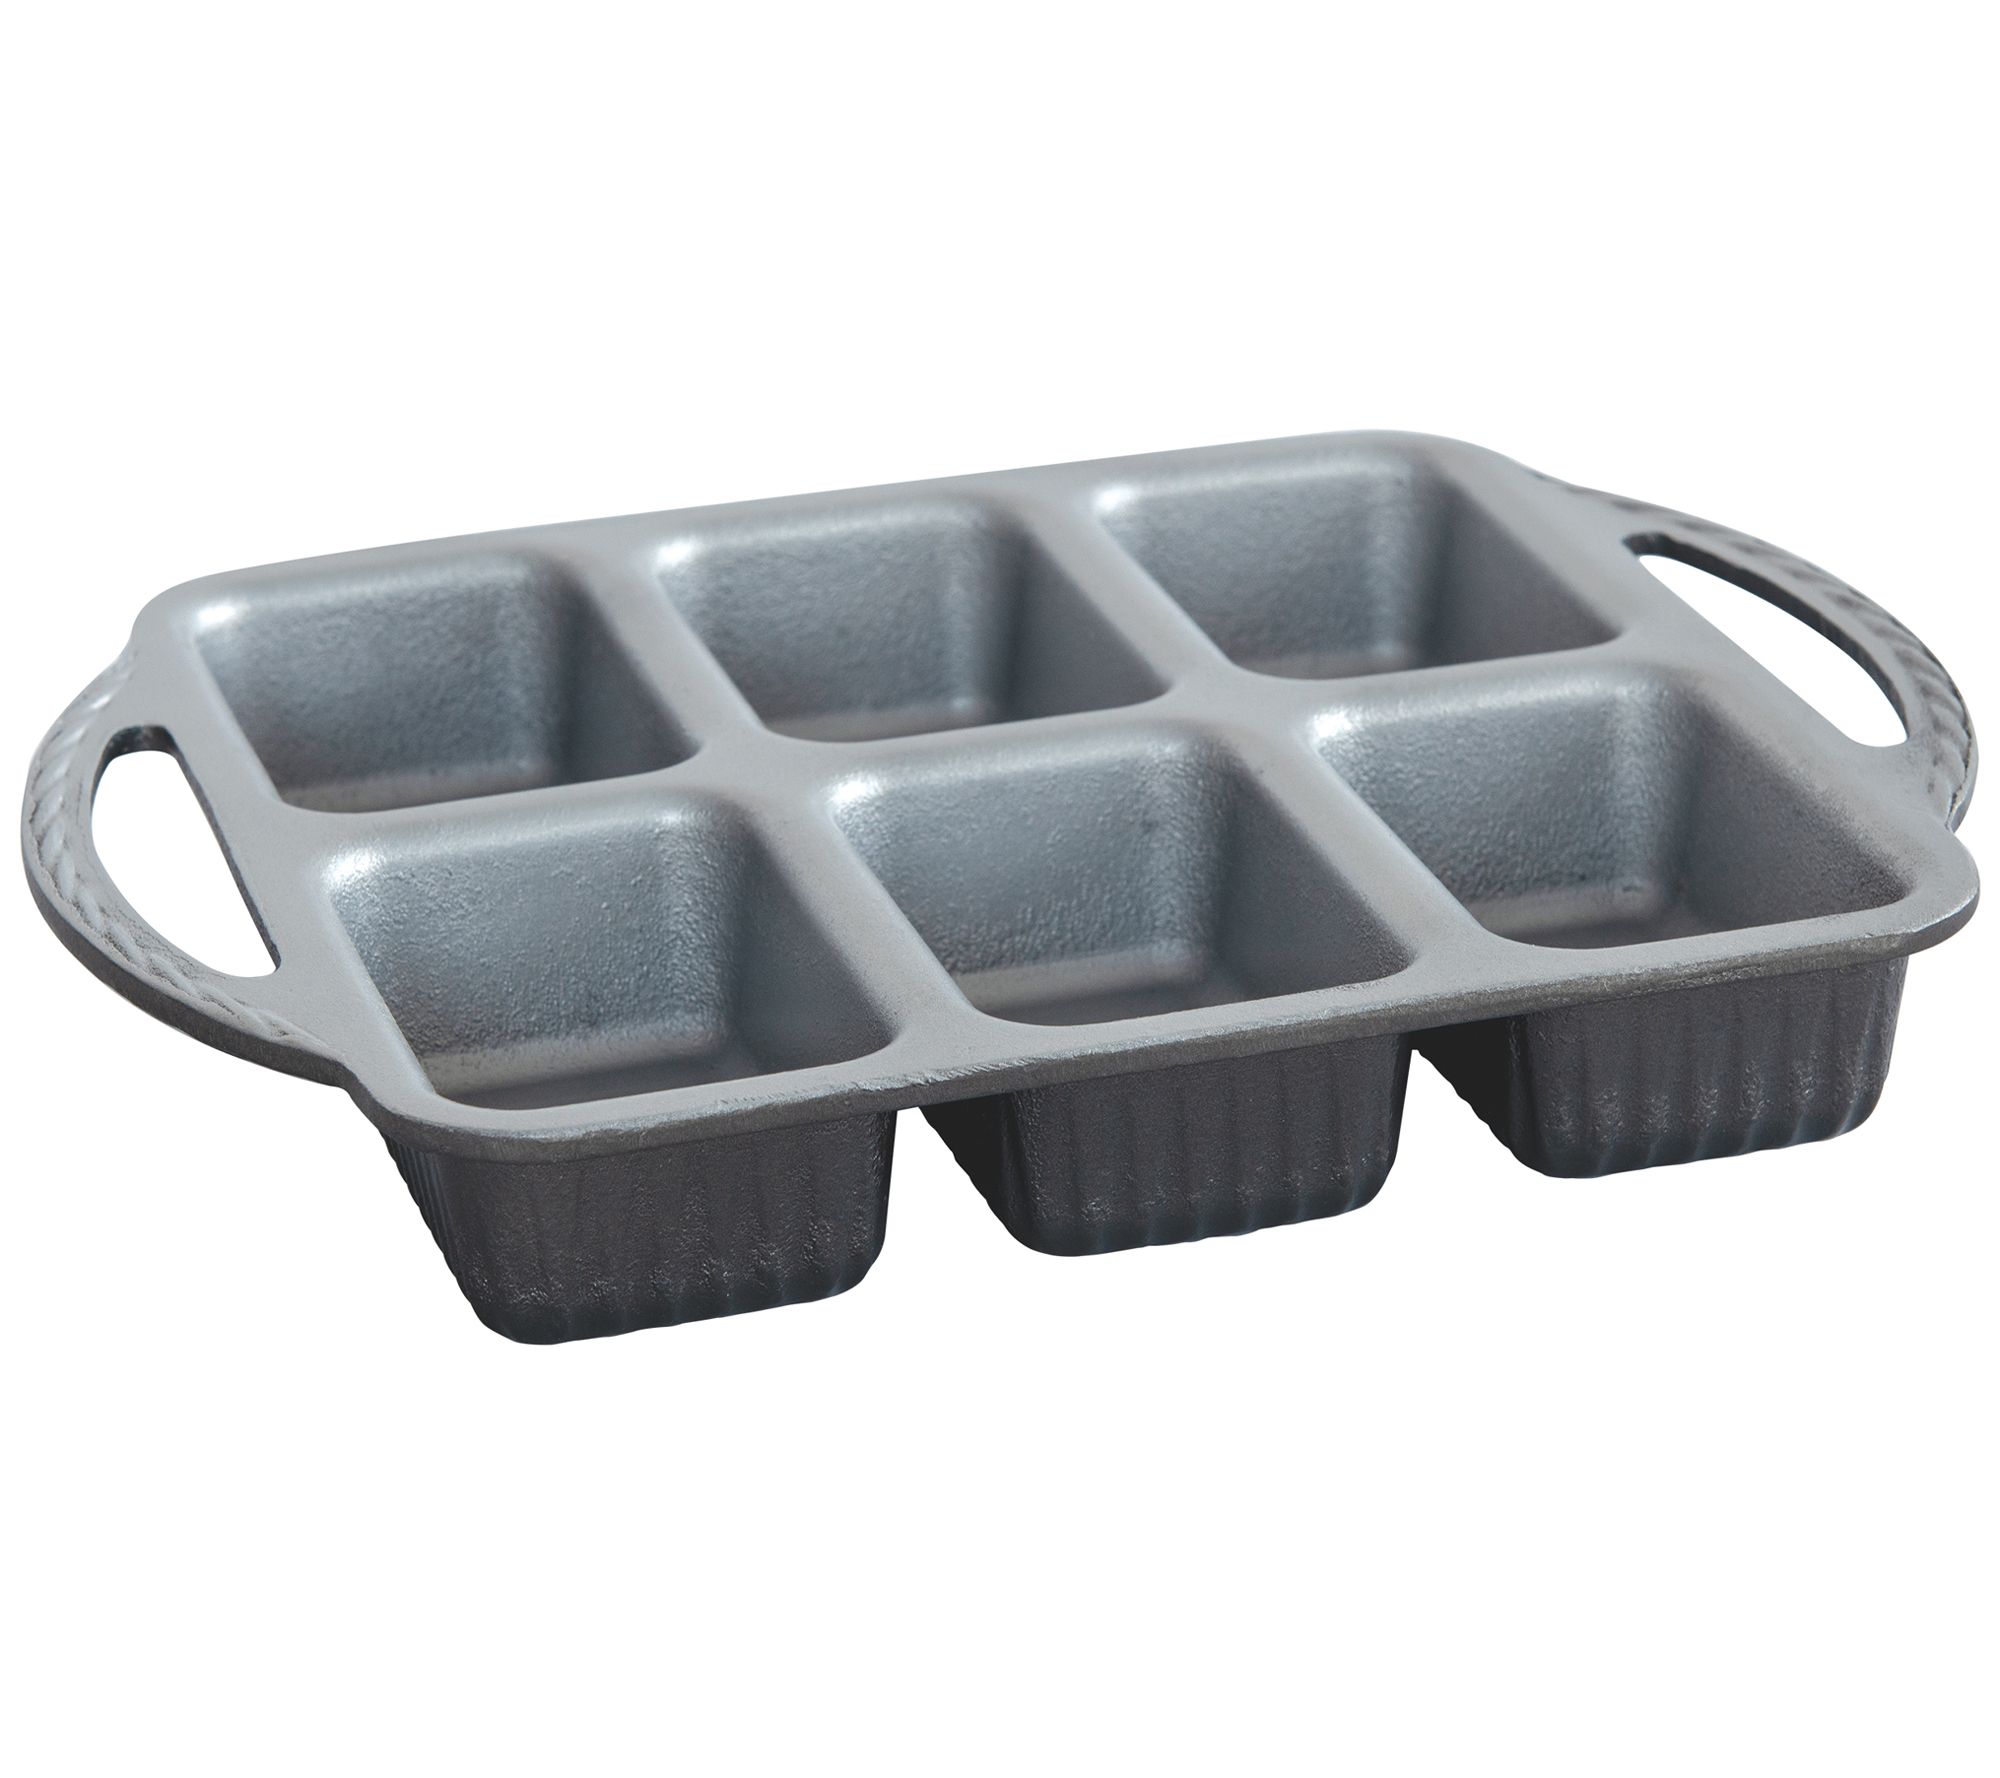 Circulon Nonstick Bakeware Mini Loaf Pan, 6-Cup, Gray & Reviews